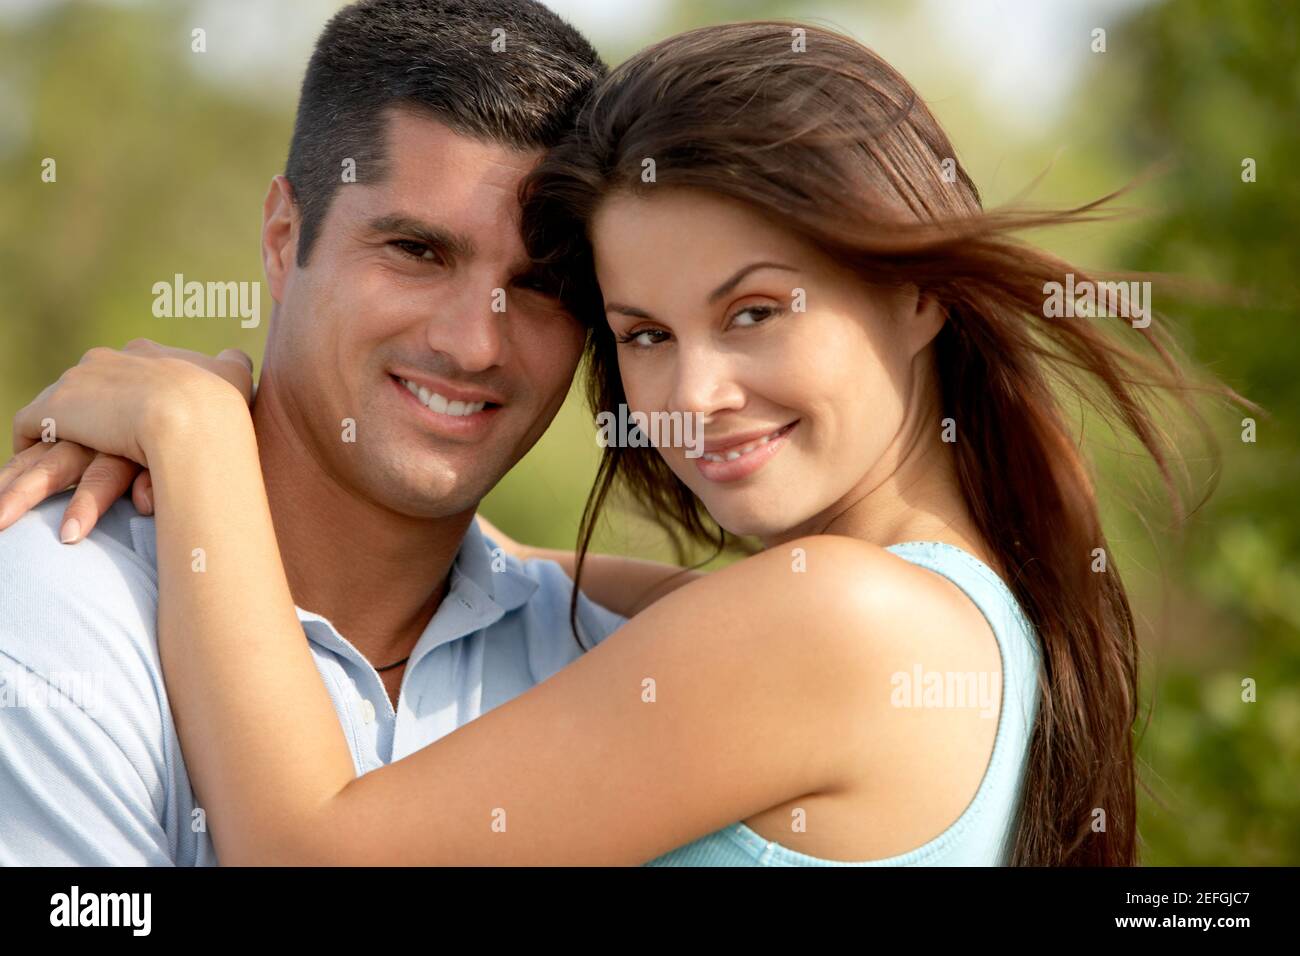 Porträt einer jungen Frau und eine Mitte erwachsener Mann lächelnd Stockfoto